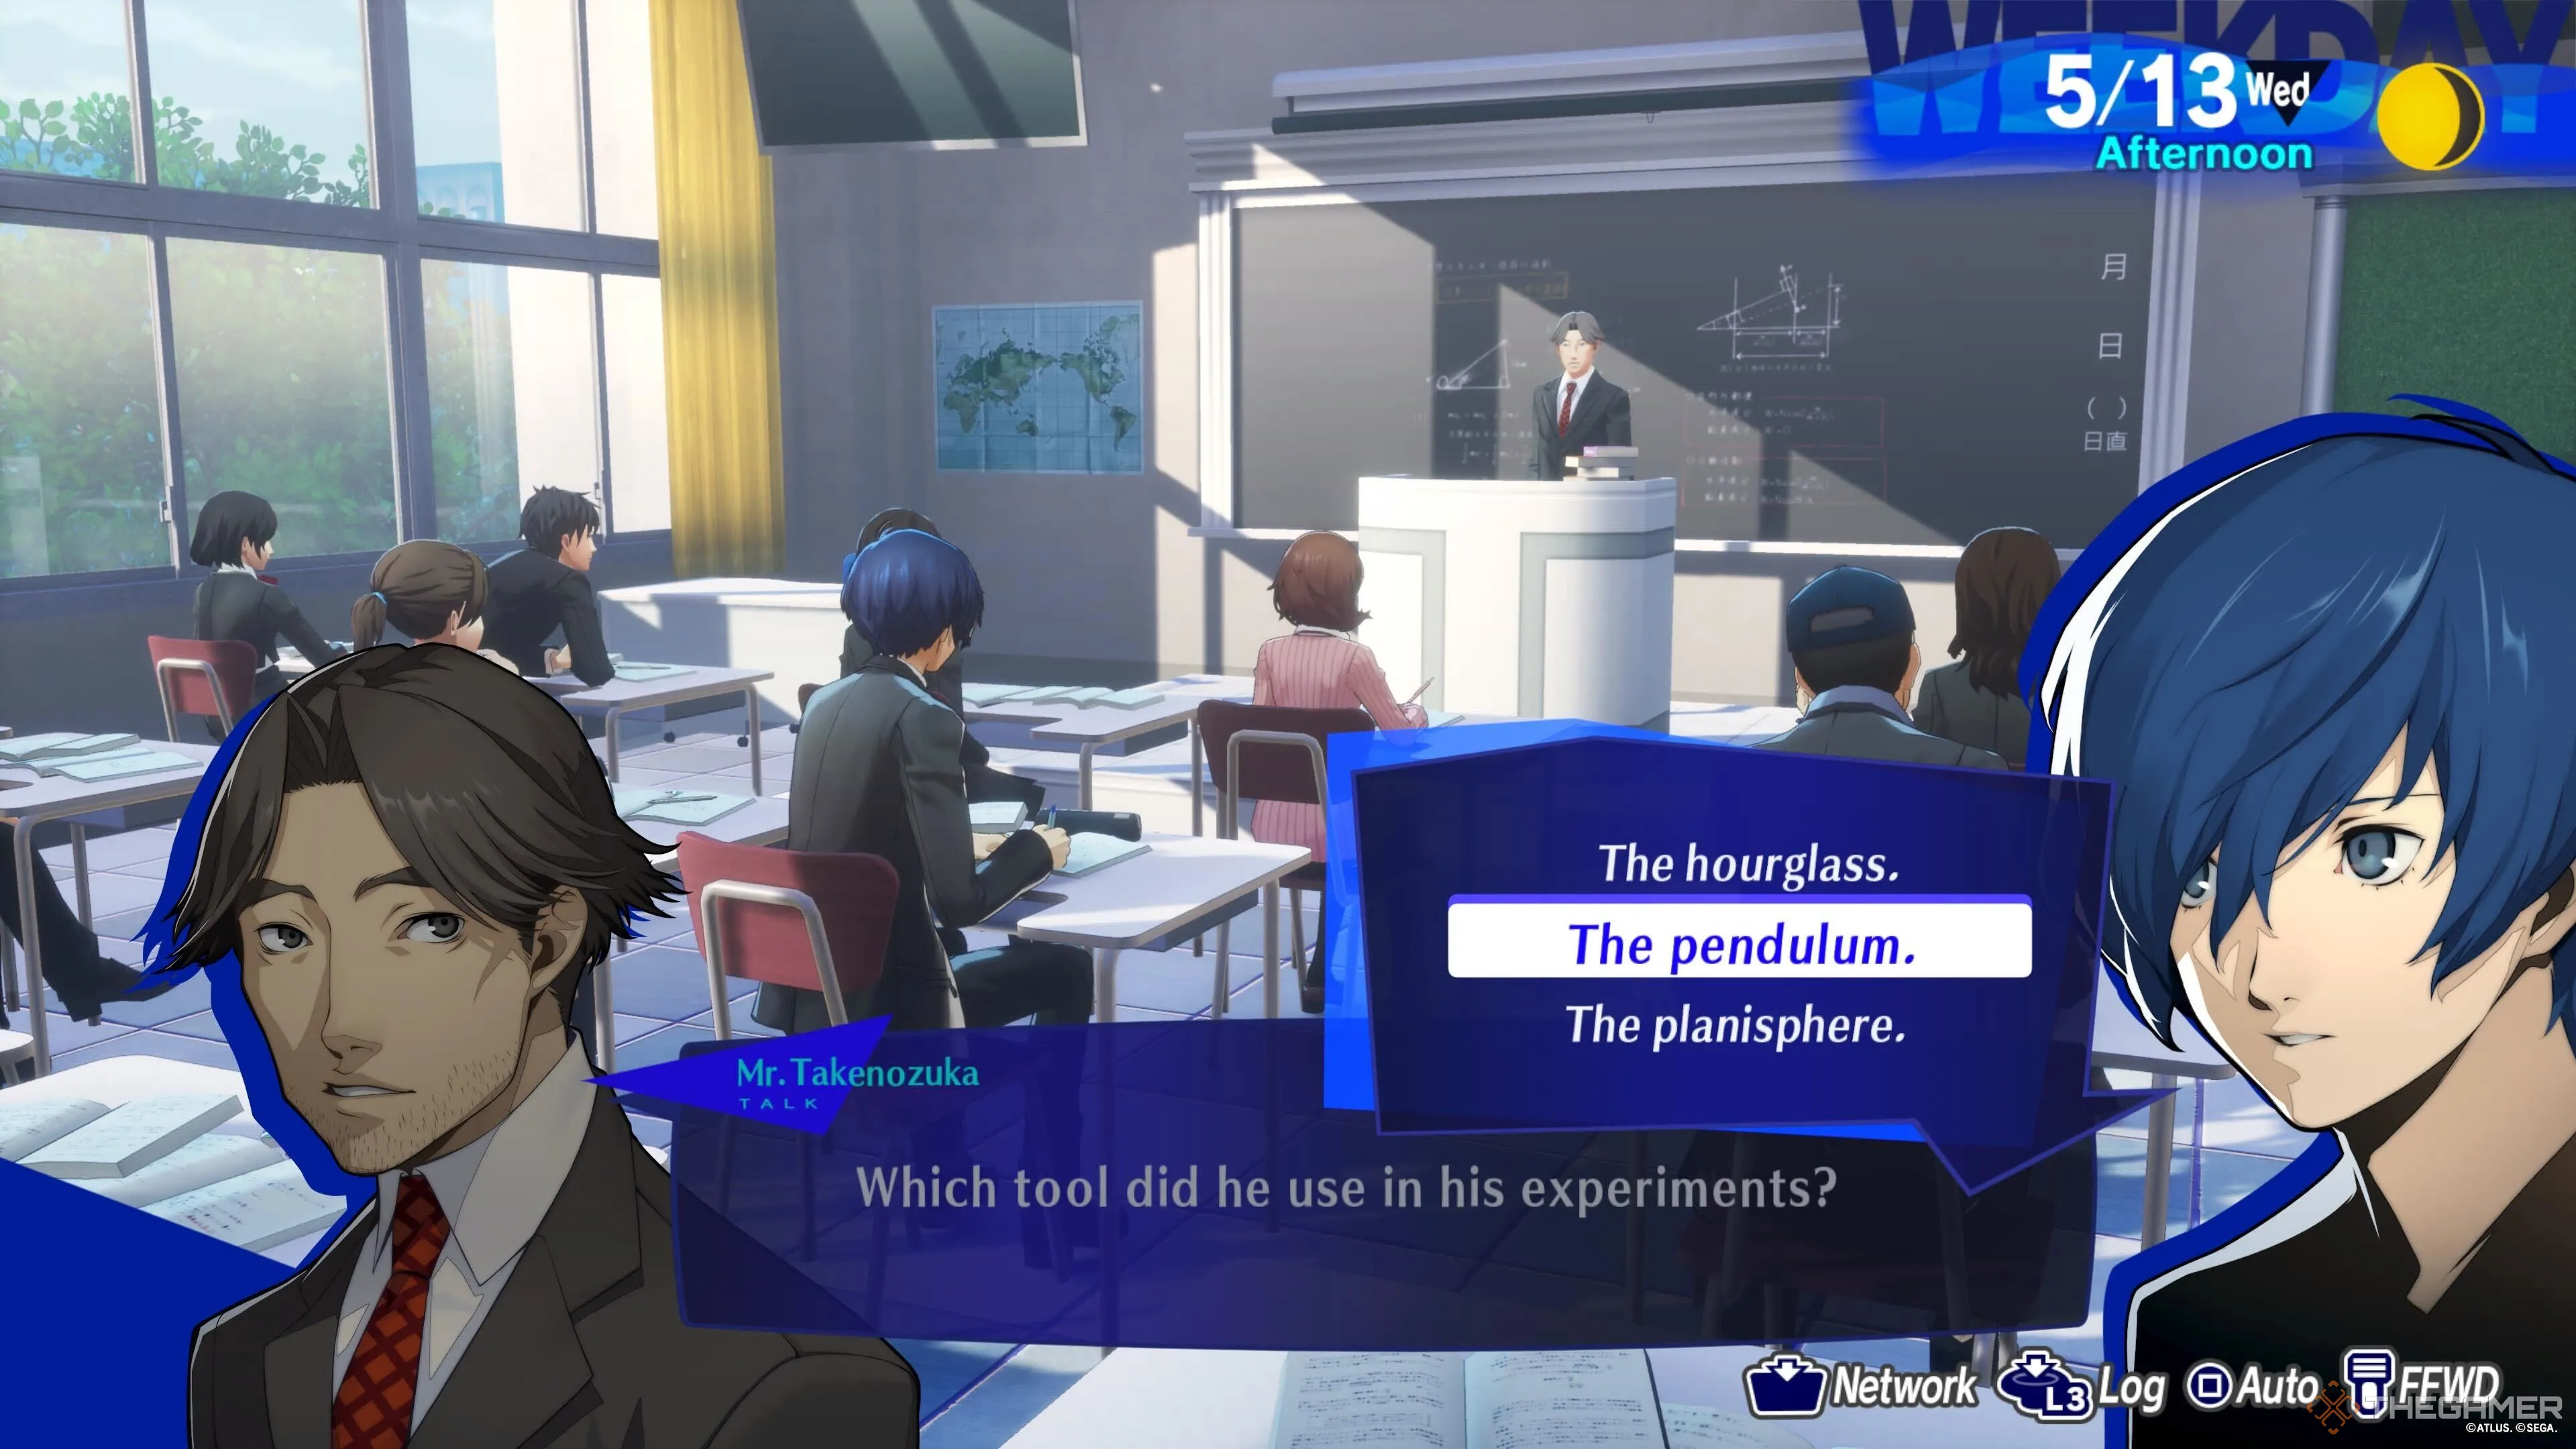 El protagonista respondiendo a la pregunta del profesor Persona 3 Reload